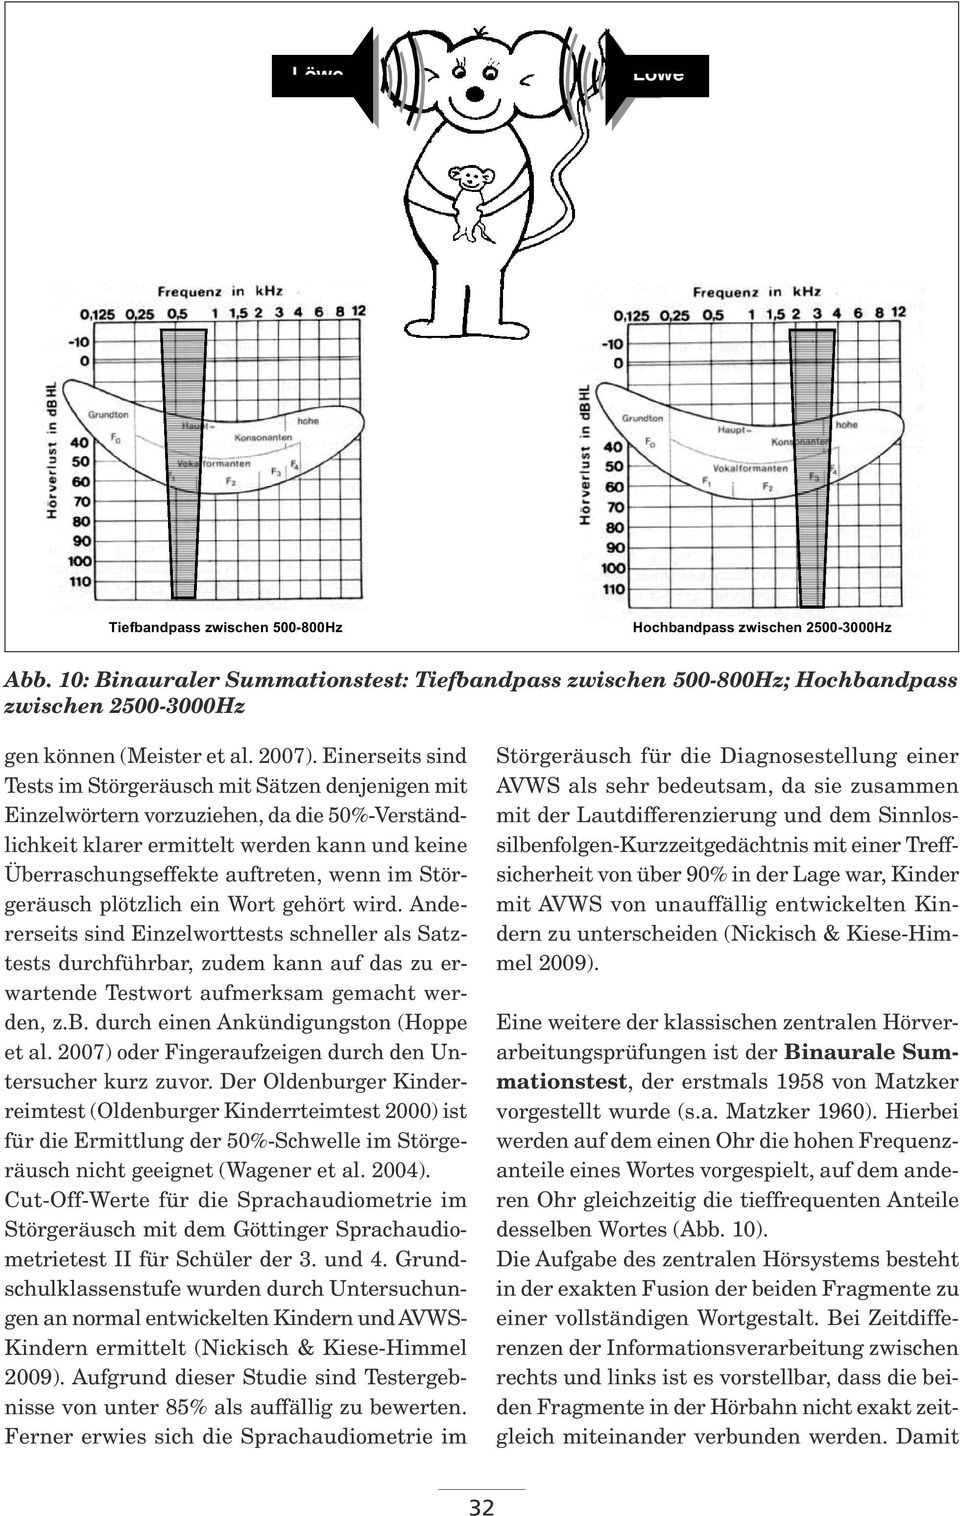 10: Binauraler 2500-3000Hz Summationstest: Tiefbandpass zwischen 500-800Hz; Hochbandpass zwischen 2500-3000Hz gen können (Meister et al. 2007).